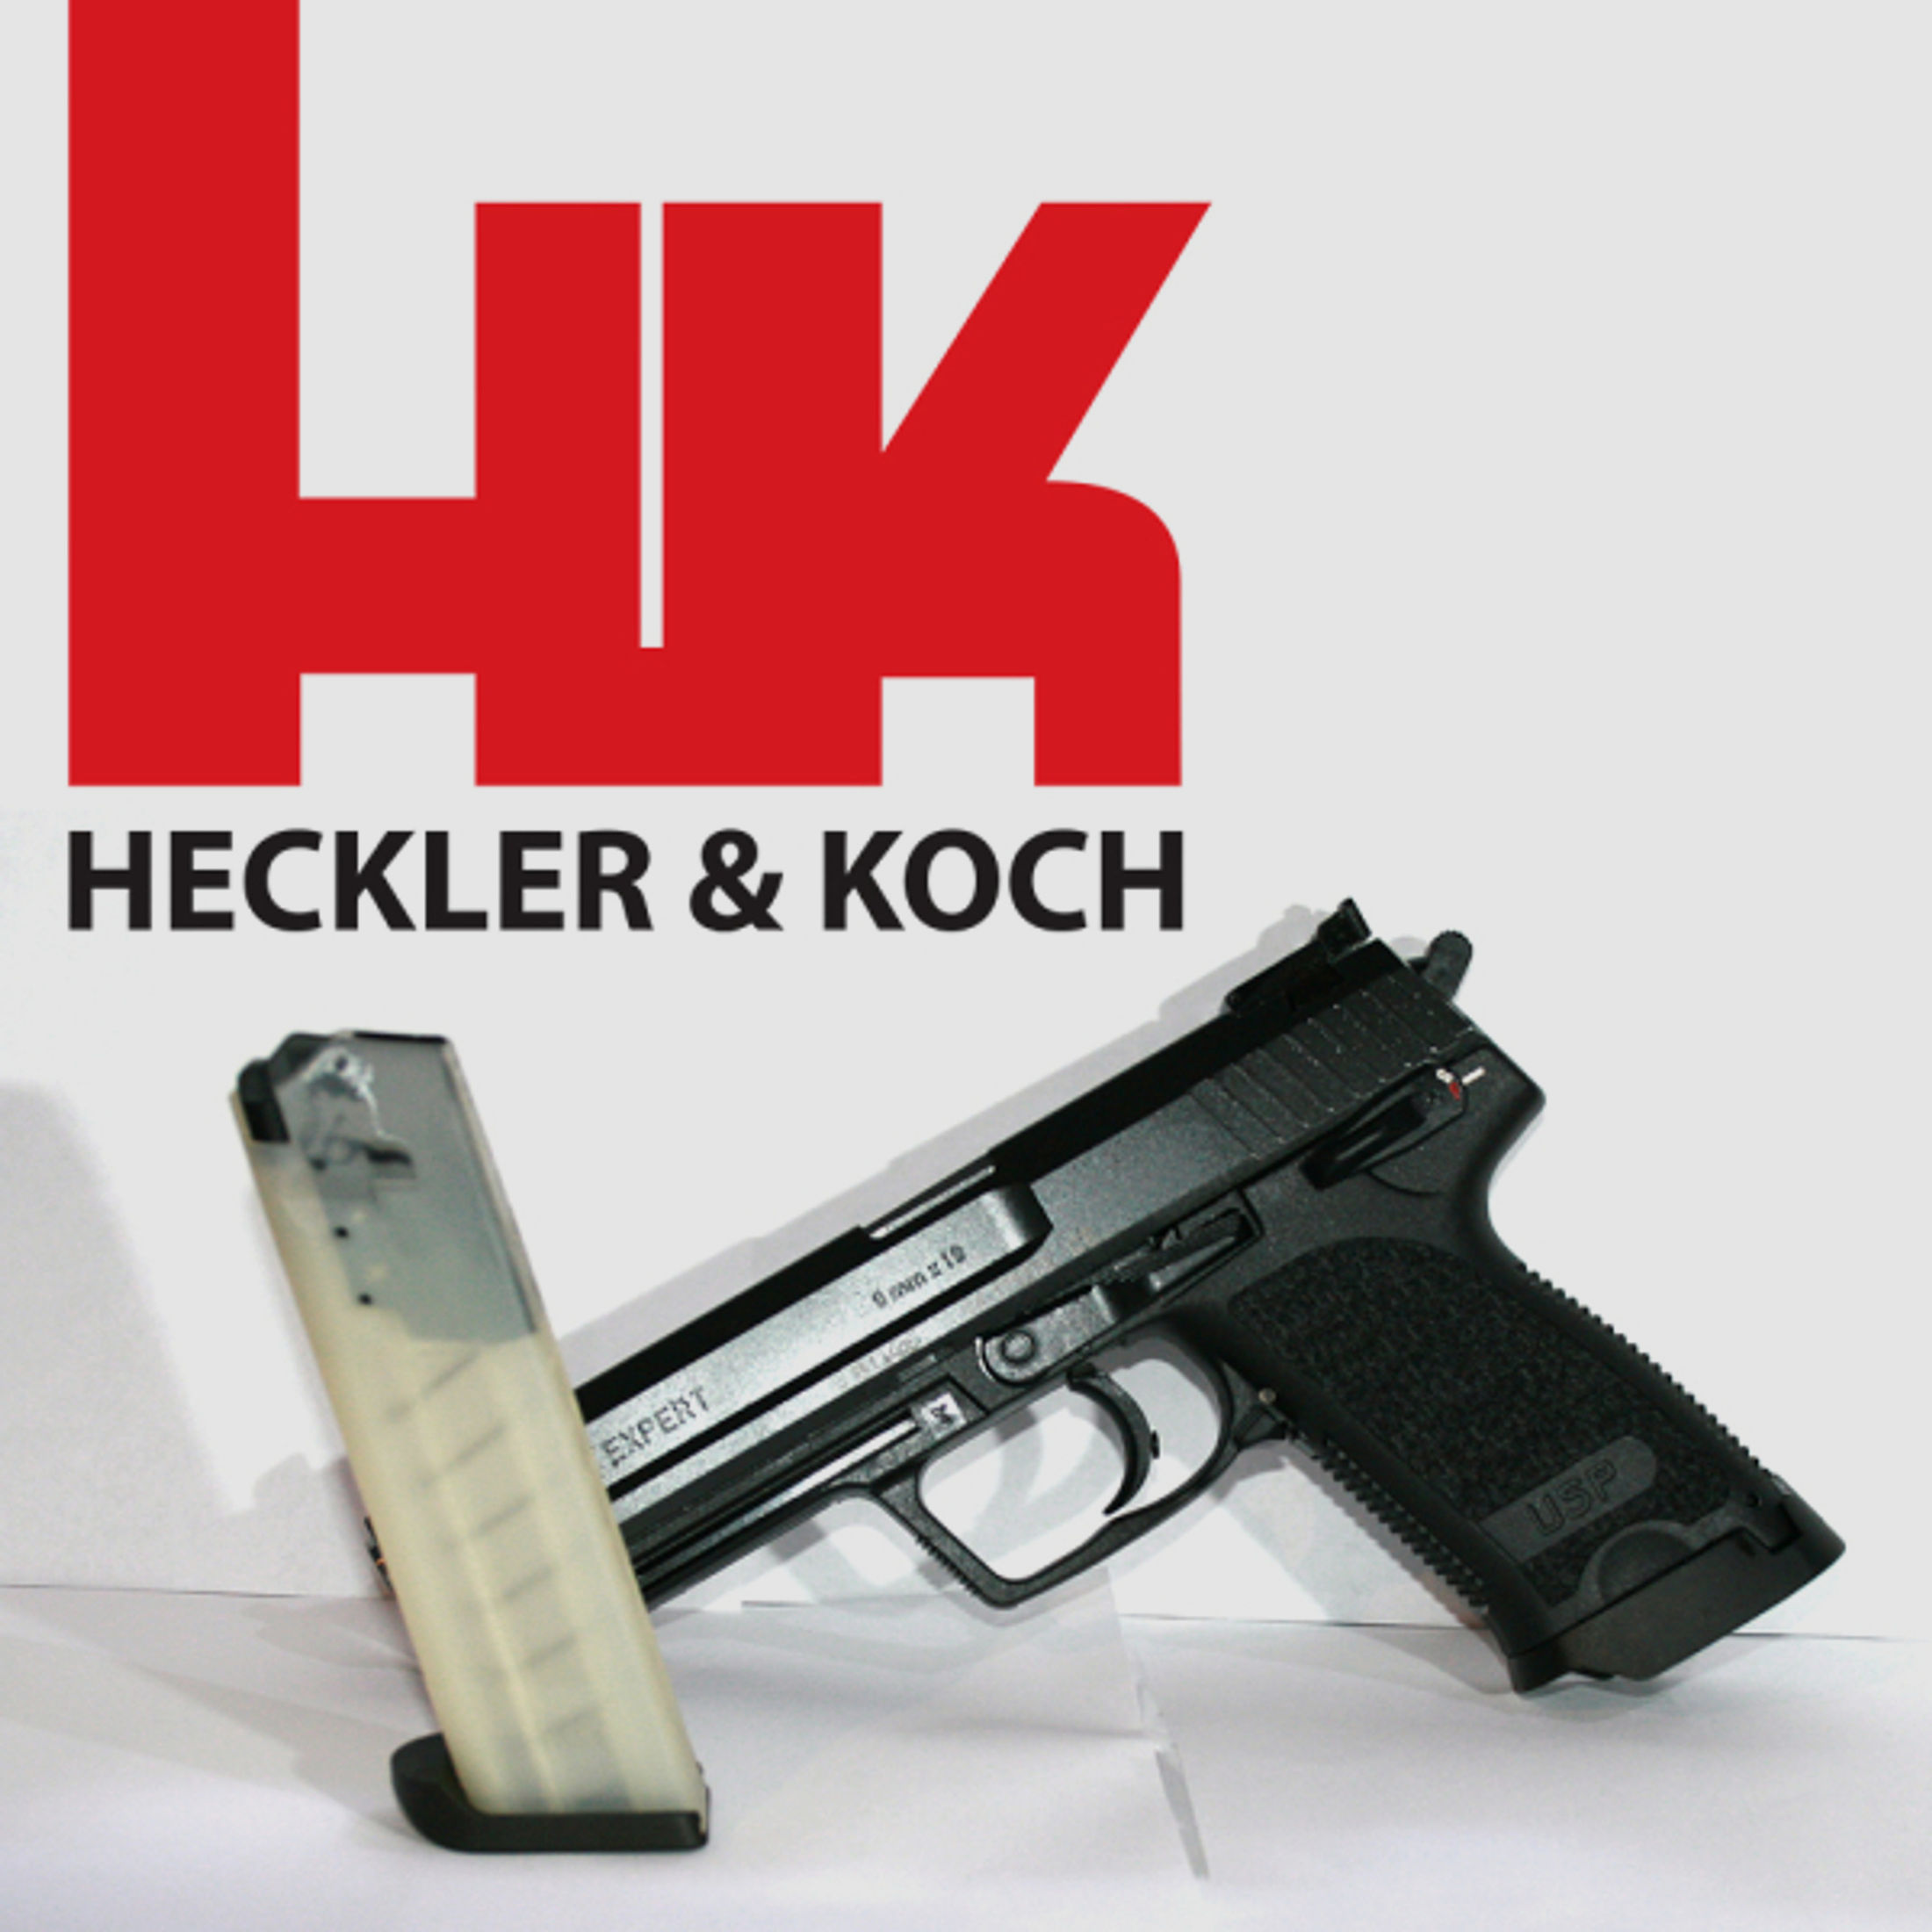 Heckler&Koch Pistole USP Expert 9mmLuger (9x19) Sportpistole mit Jet-Funnel, 132mmLaufl. - 18-Schuss